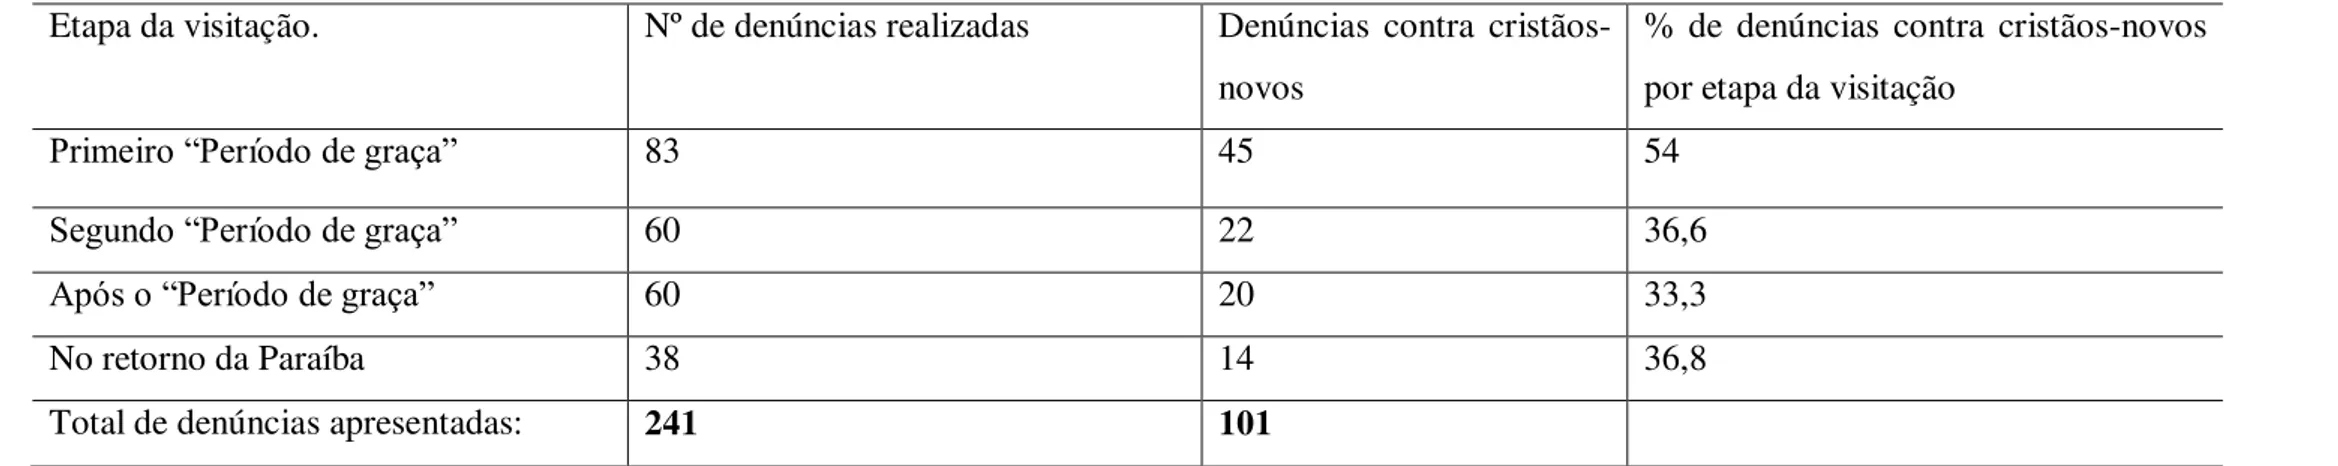 Tabela 3  – DENÚNCIAS CONTRA CRISTÃOS-NOVOS REALIZADAS EM PERNAMBUCO. 